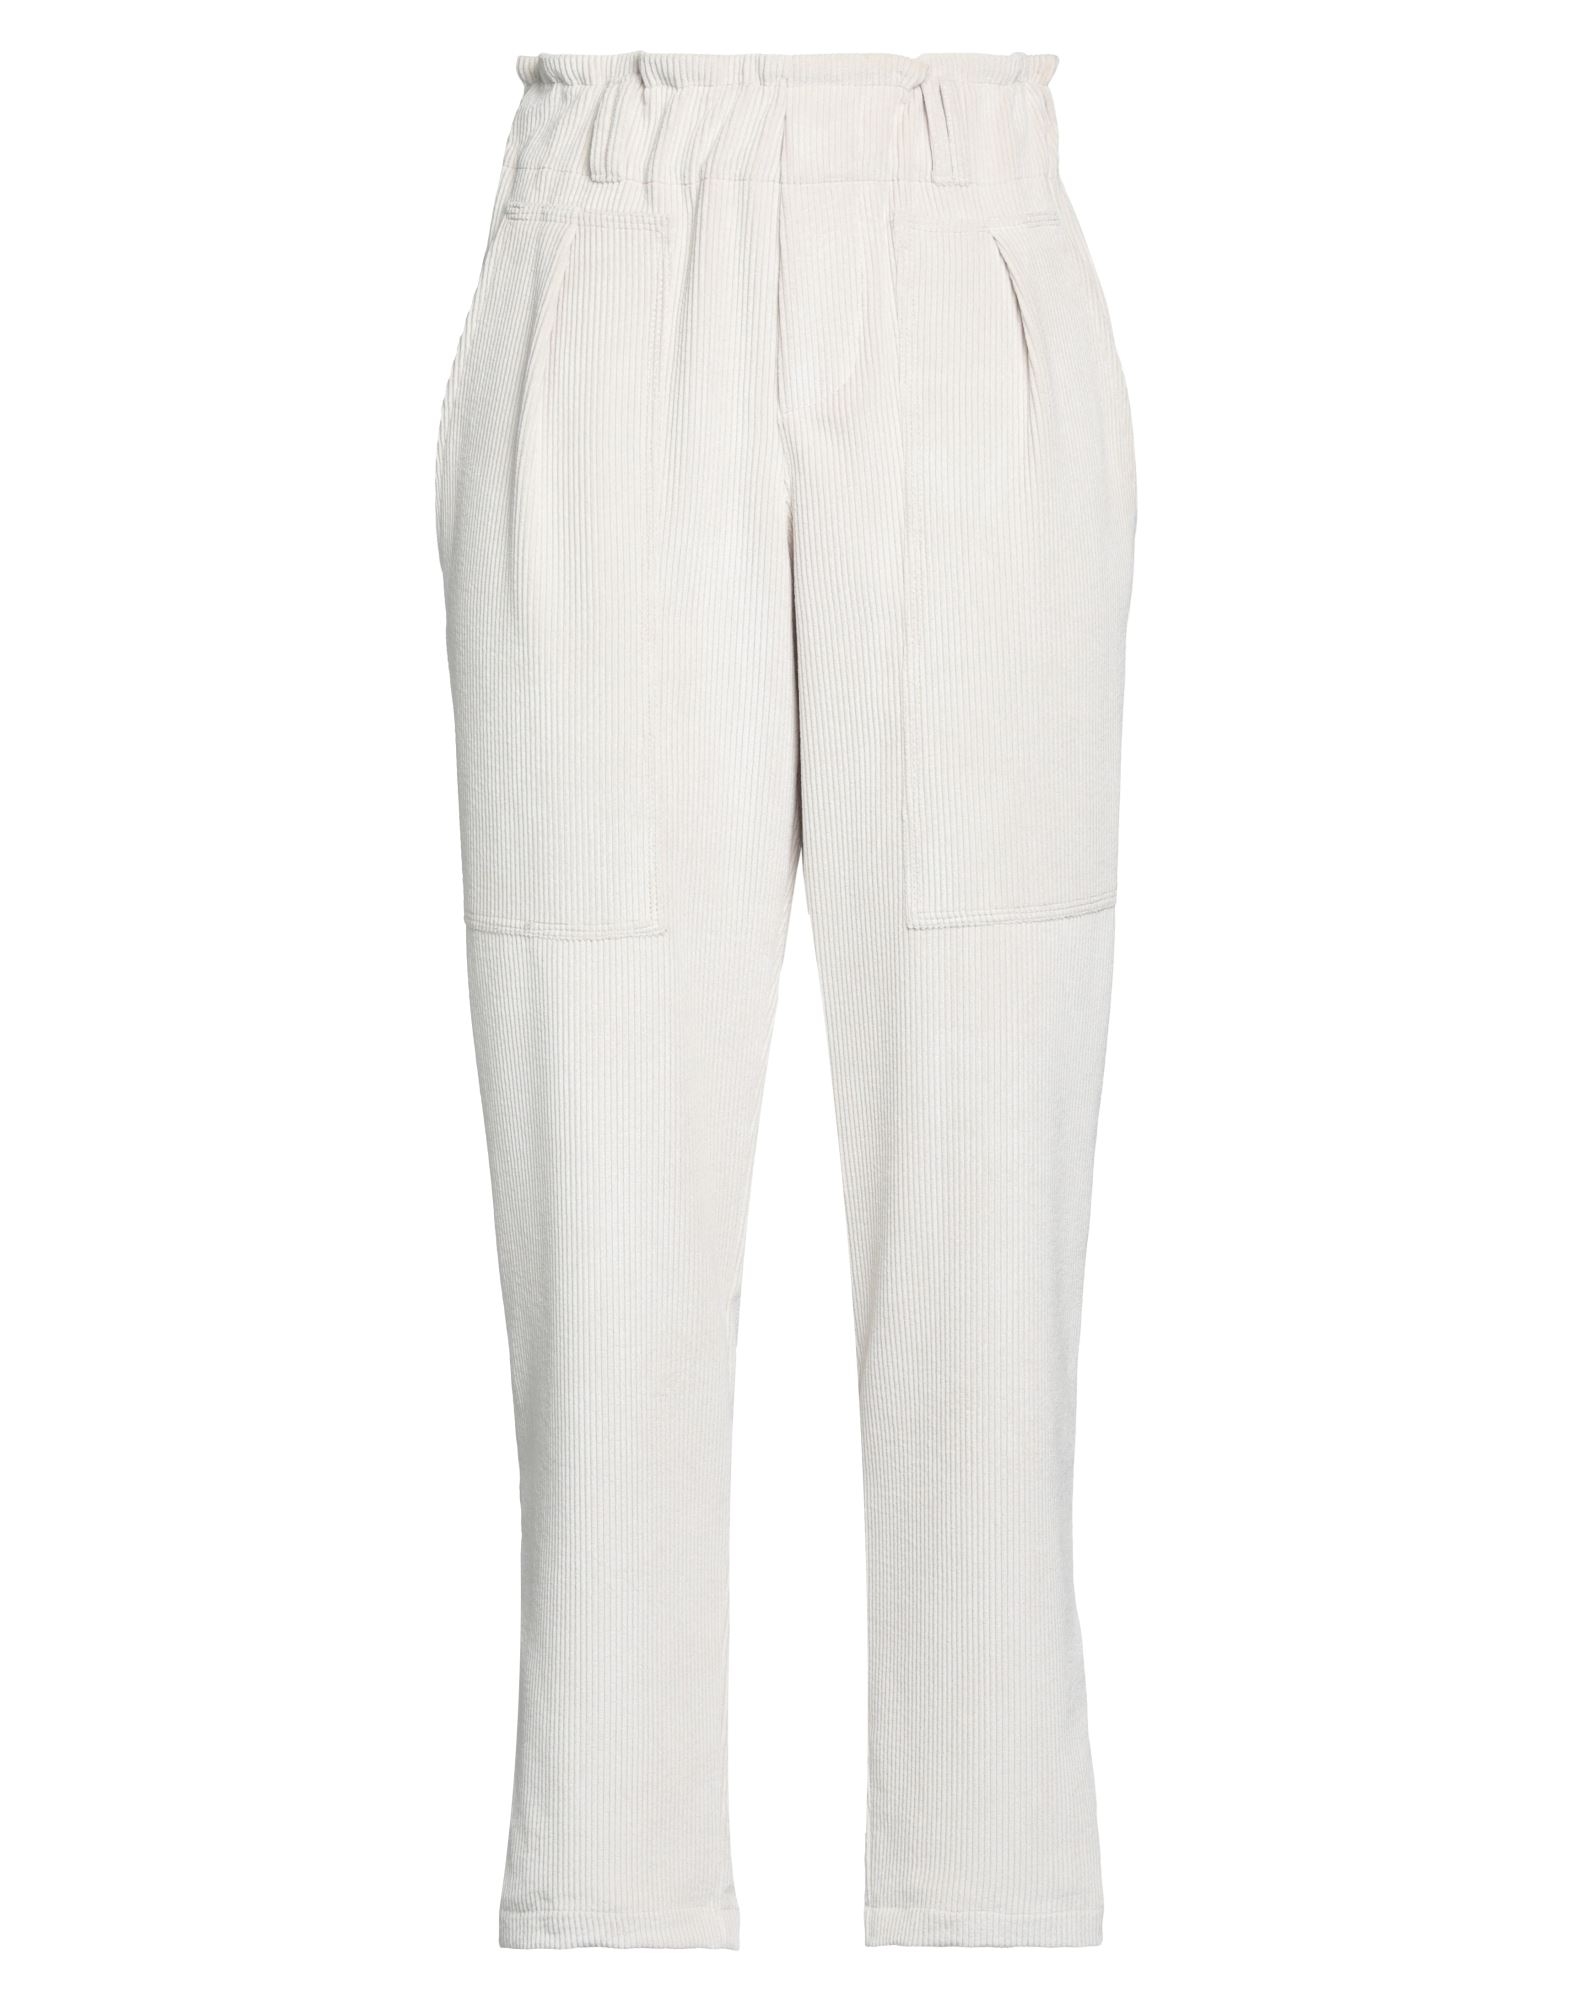 Diane Krüger Woman Pants Off White Size 8 Polyester, Polyamide, Elastane